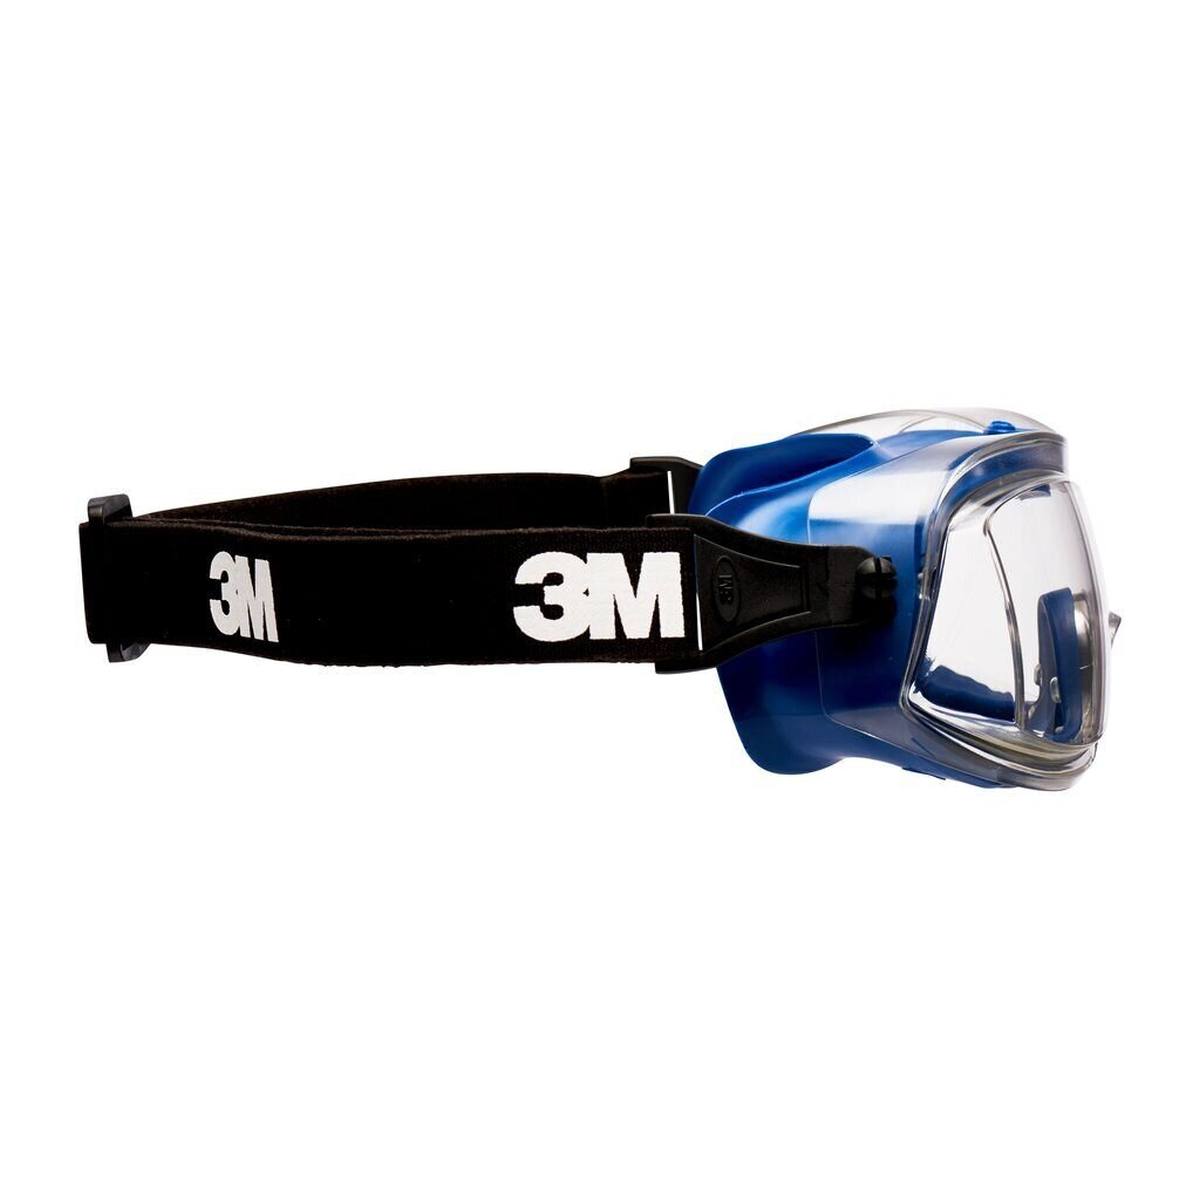 occhiali di sicurezza 3M Modul-R DX/UV, PC, trasparenti, leggeri, profilo sottileVentilazione diretta, fascia in nylon, incluso sacchetto in microfibra ModulR